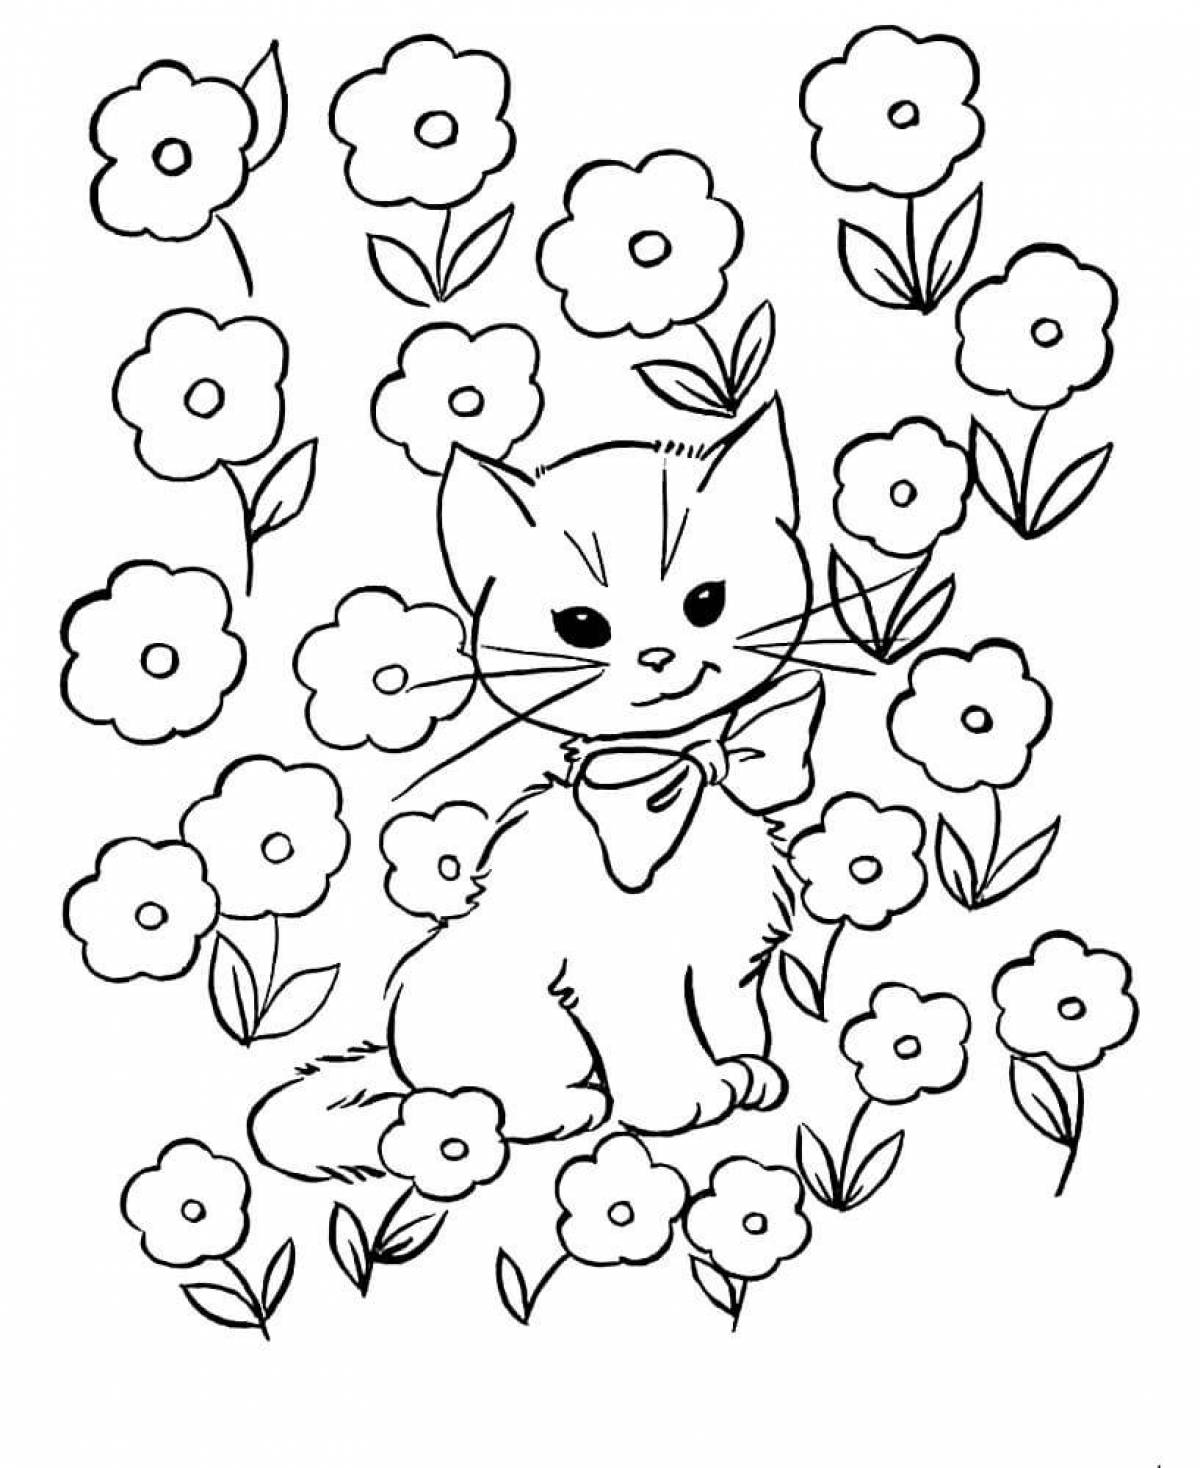 5 кошек раскраска. Кошки. Раскраска. Раскраска цветочек. Котенок. Раскраска. Кошка раскраска для детей.